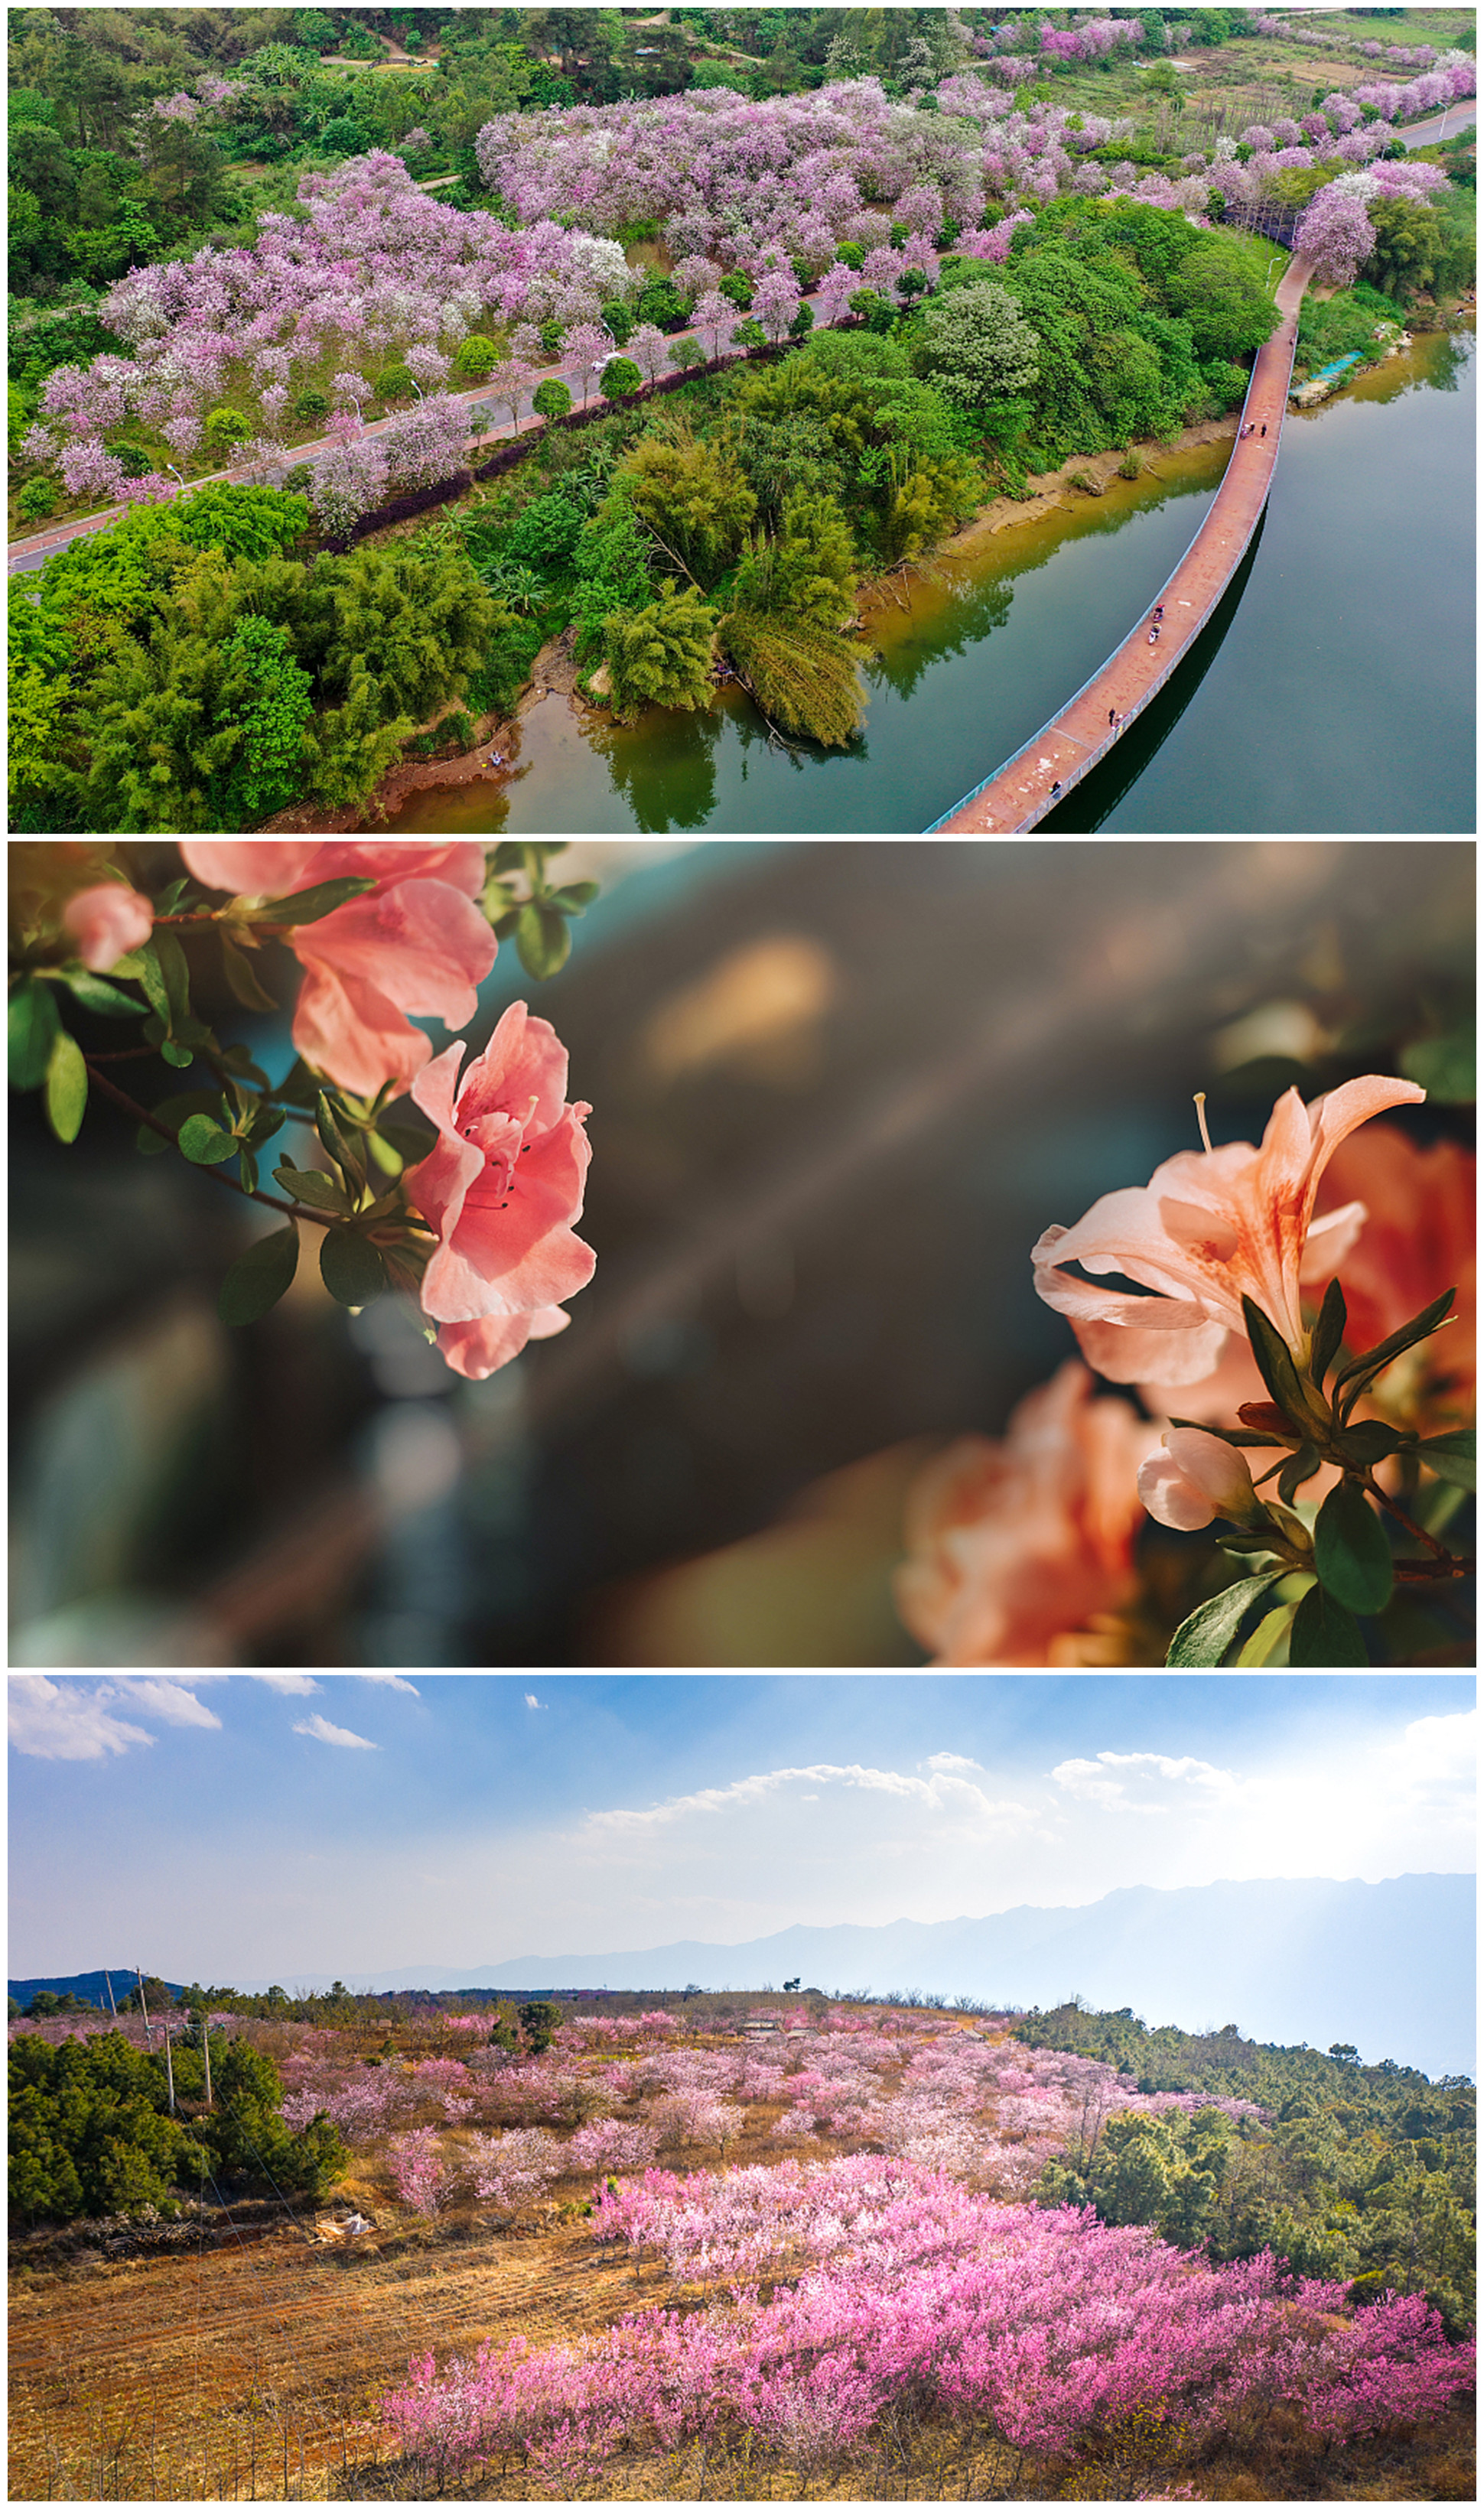 《春暖花开的中国》开播 绘就美丽中国春景图